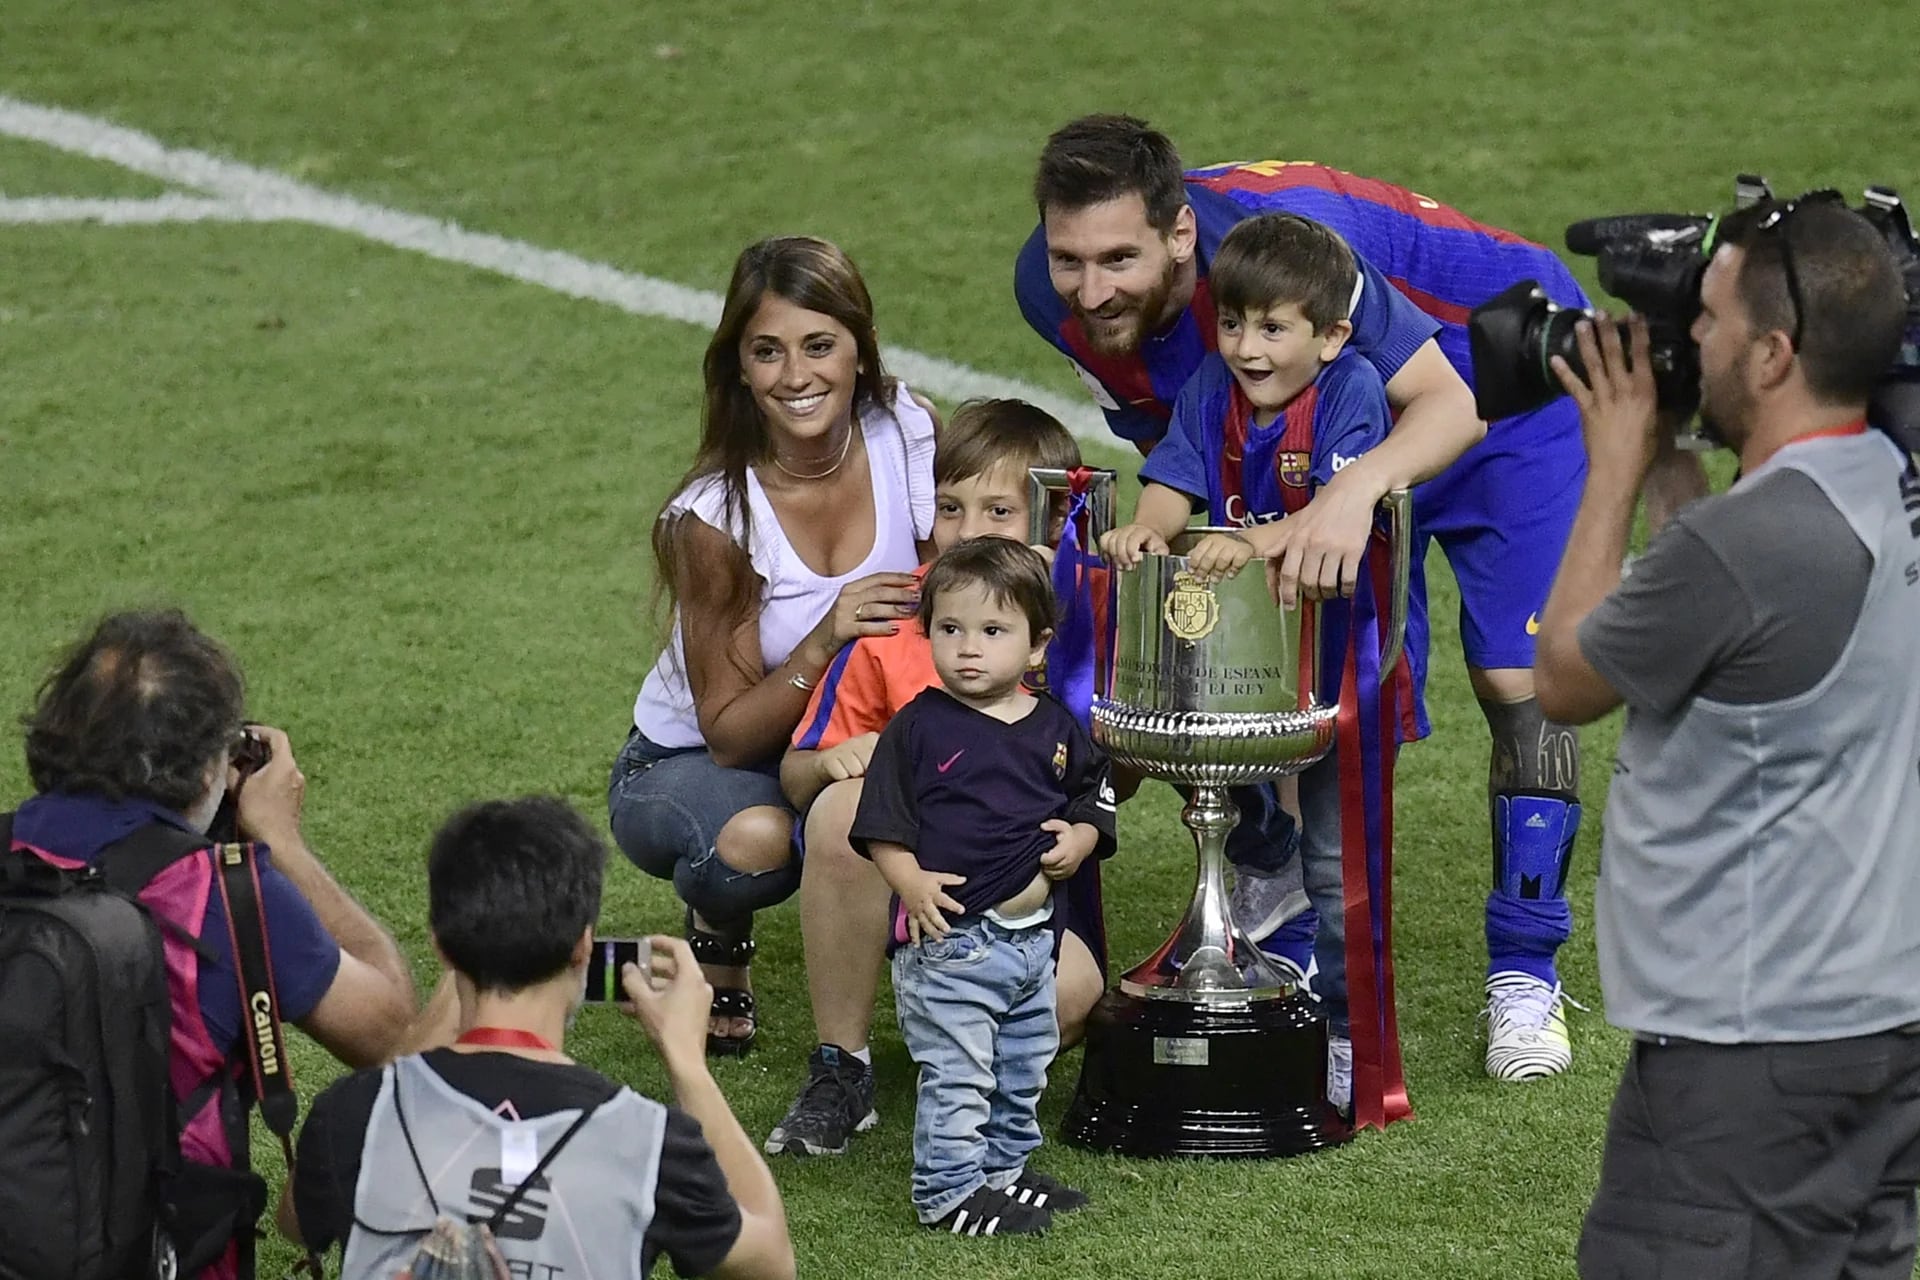 Barcelona se consagró campeón de la Copa del Rey 2016/17 con el aporte clave de Lionel Messi, autor del primer gol en el 3 a 1 ante Alavés. Al finalizar el partido los jugadores recibieron a su familia: aquí “La Pulga” con su esposa, Antonella Roccuzzo, y sus hijos Thiago y Mateo